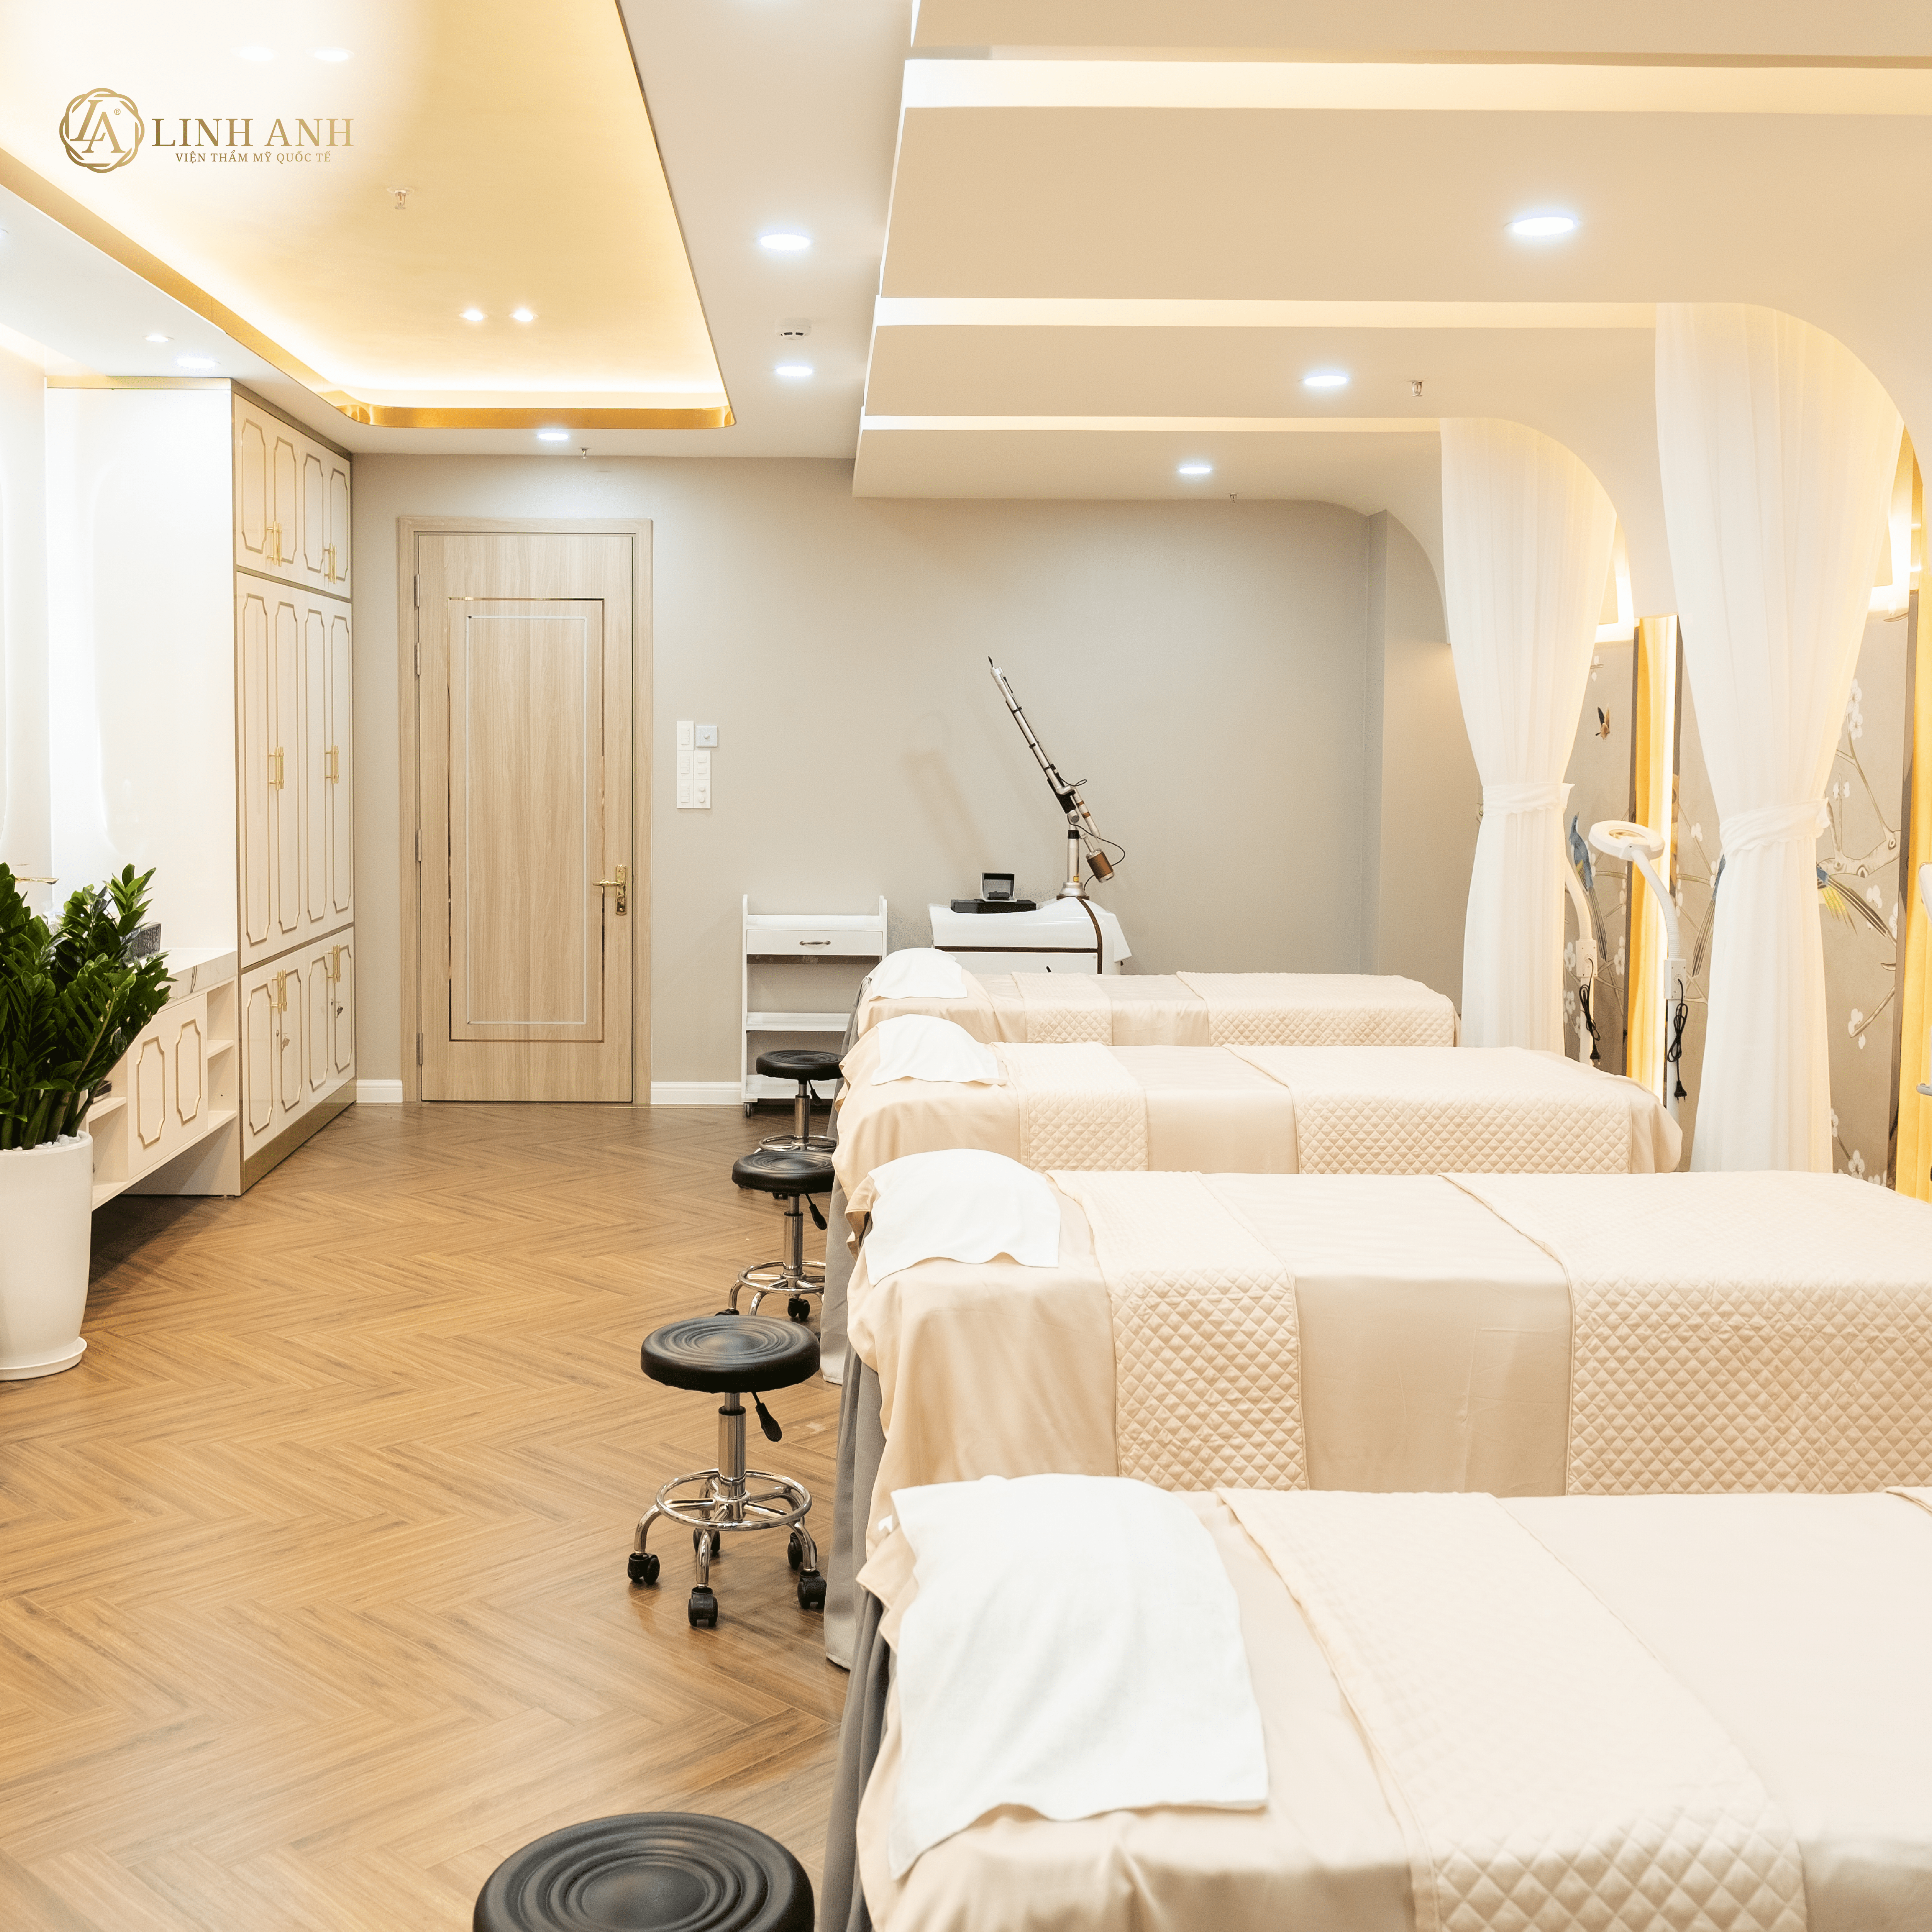 Phòng chăm sóc da được thiết kế sang trọng, độc đáo tạo không gian riêng cho khách hàng